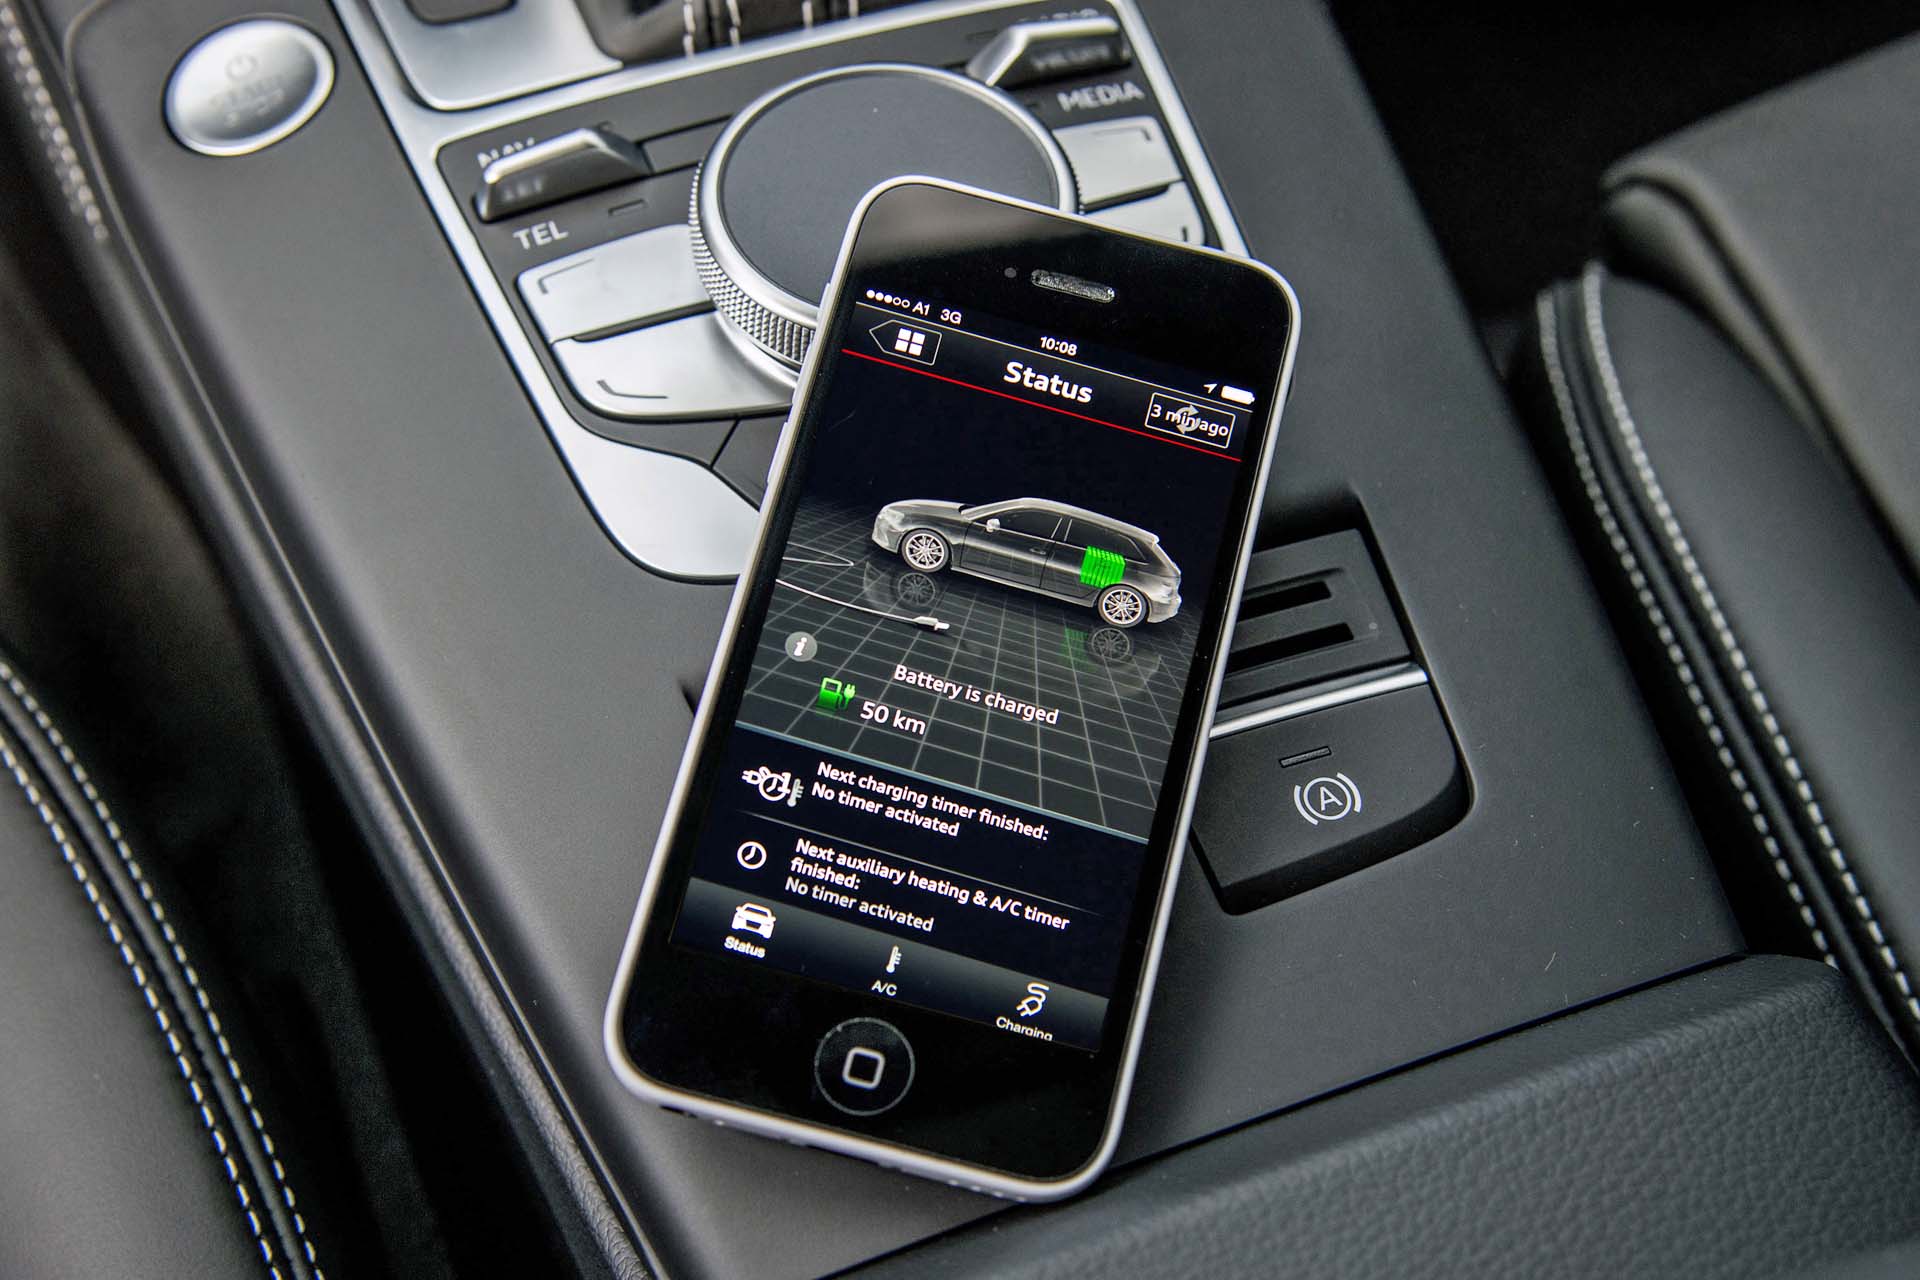 Audi e-tron connect services app for smartphones